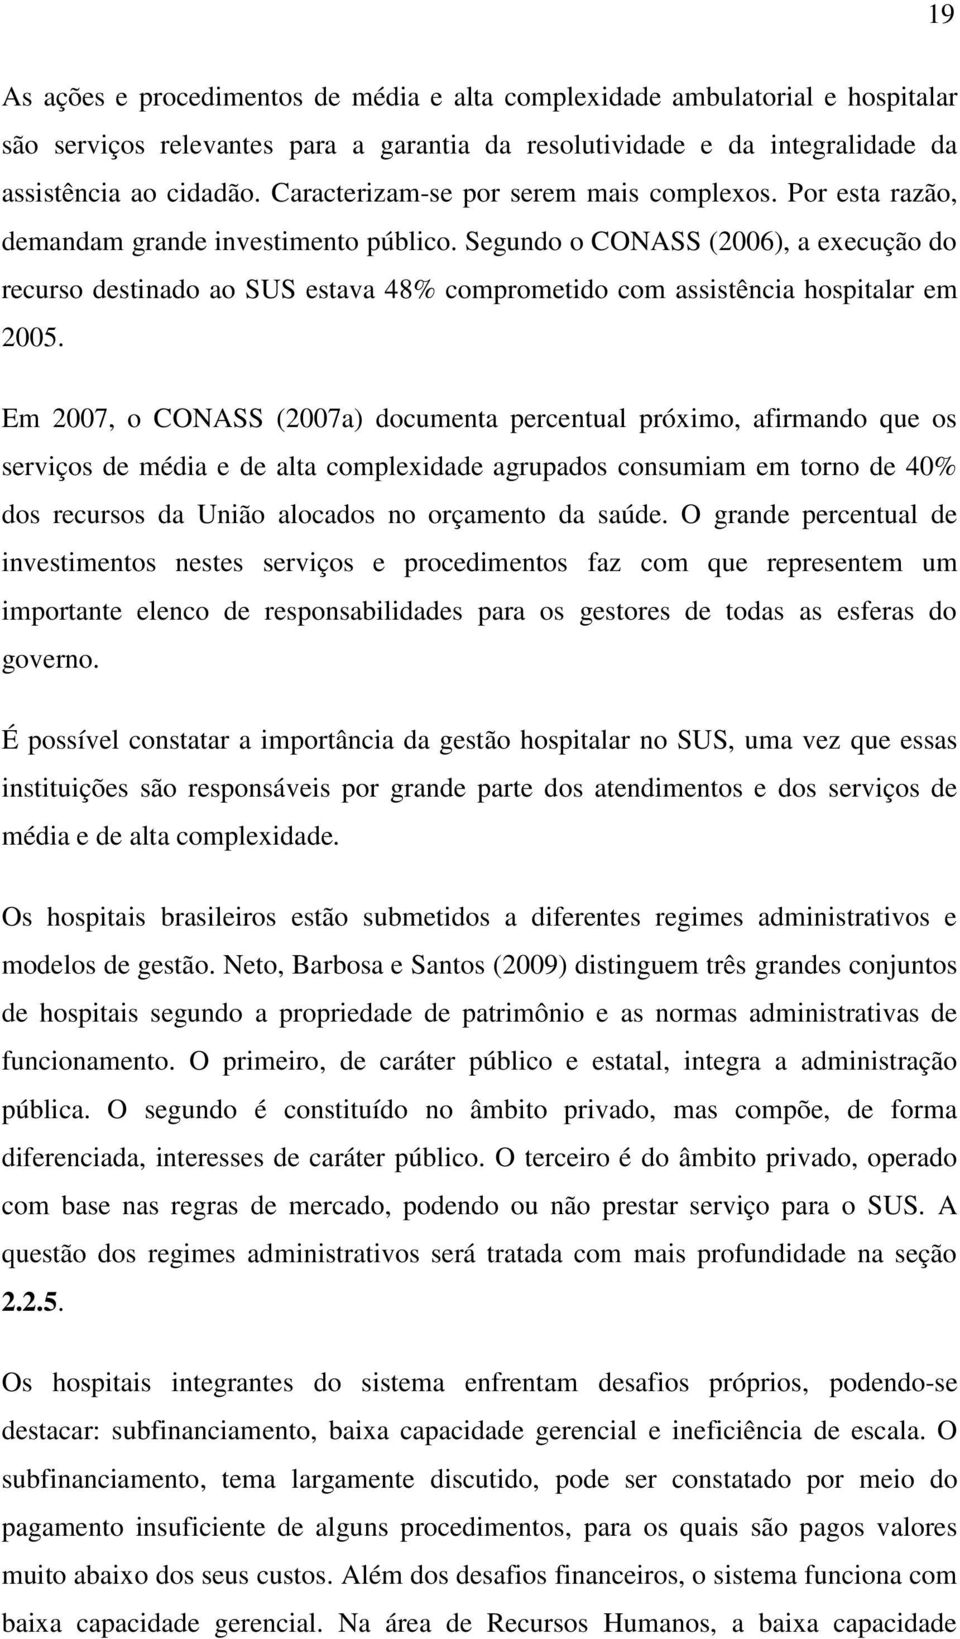 Segundo o CONASS (2006), a execução do recurso destinado ao SUS estava 48% comprometido com assistência hospitalar em 2005.